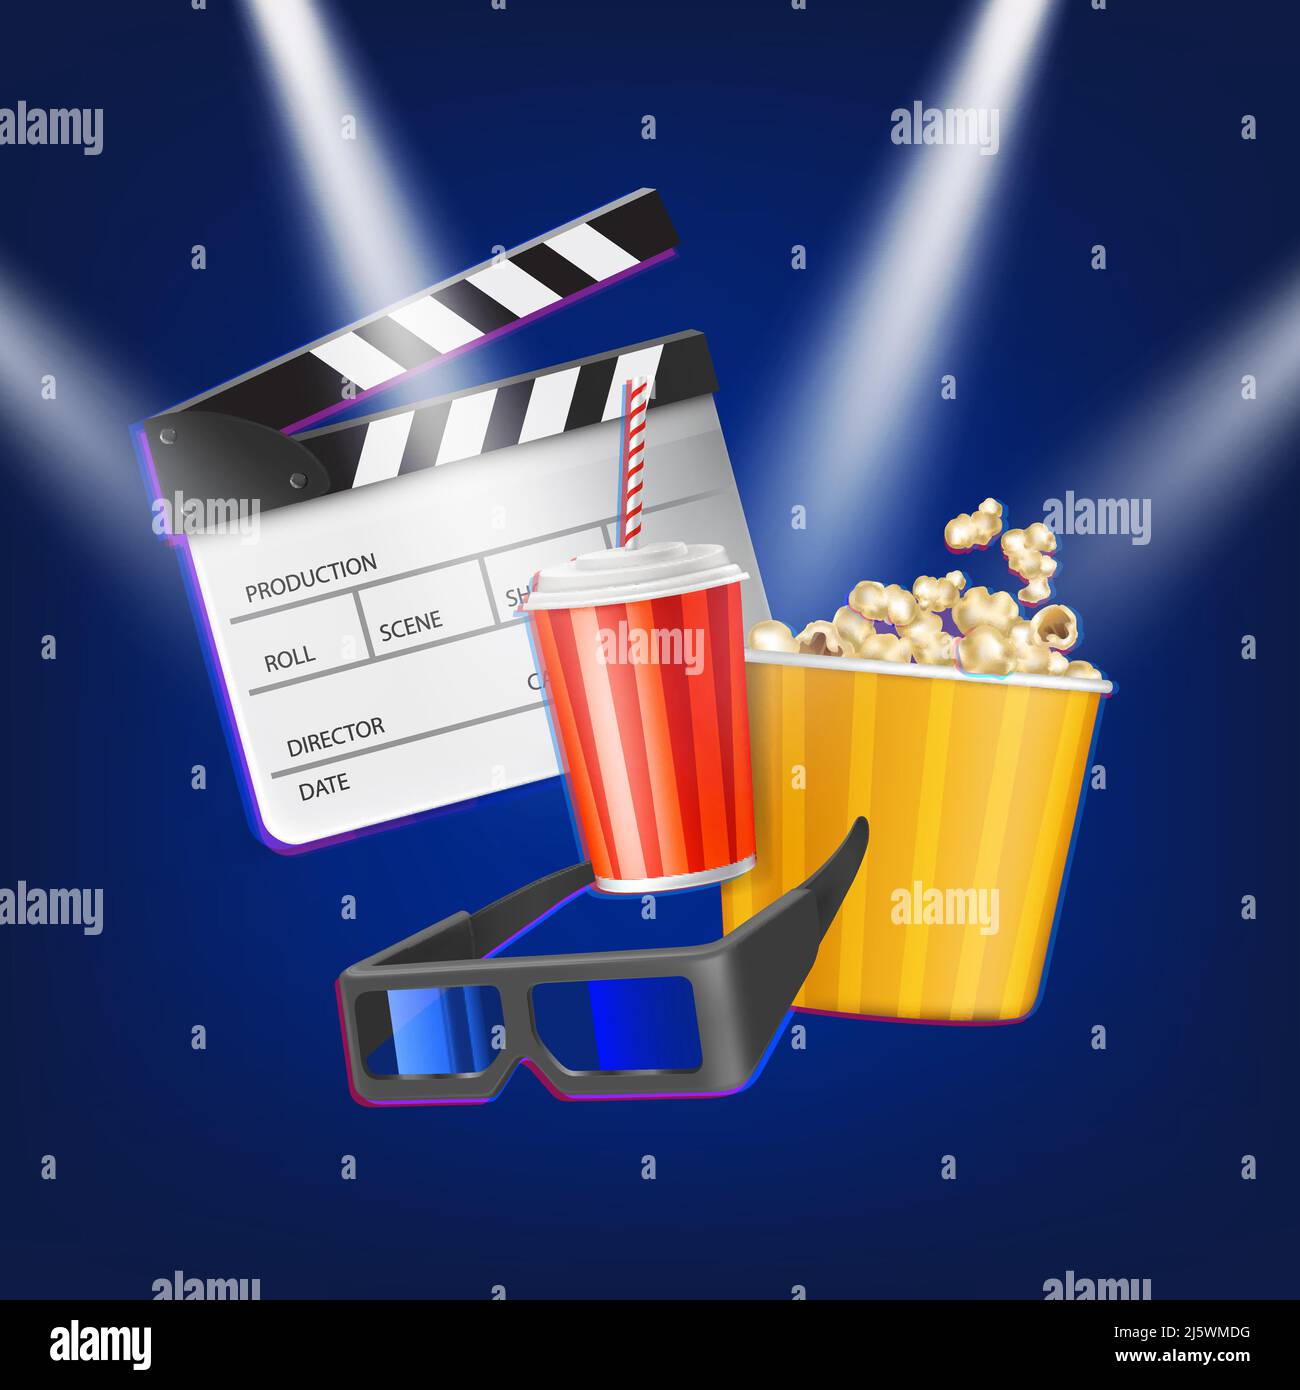 Kinoklapper, Popcorn, 3D Gläser und Getränk. Filmindustrie und Zubehör unter Scheinwerferstrahlen auf blauem Hintergrund isoliert ansehen. Cinem Stock Vektor